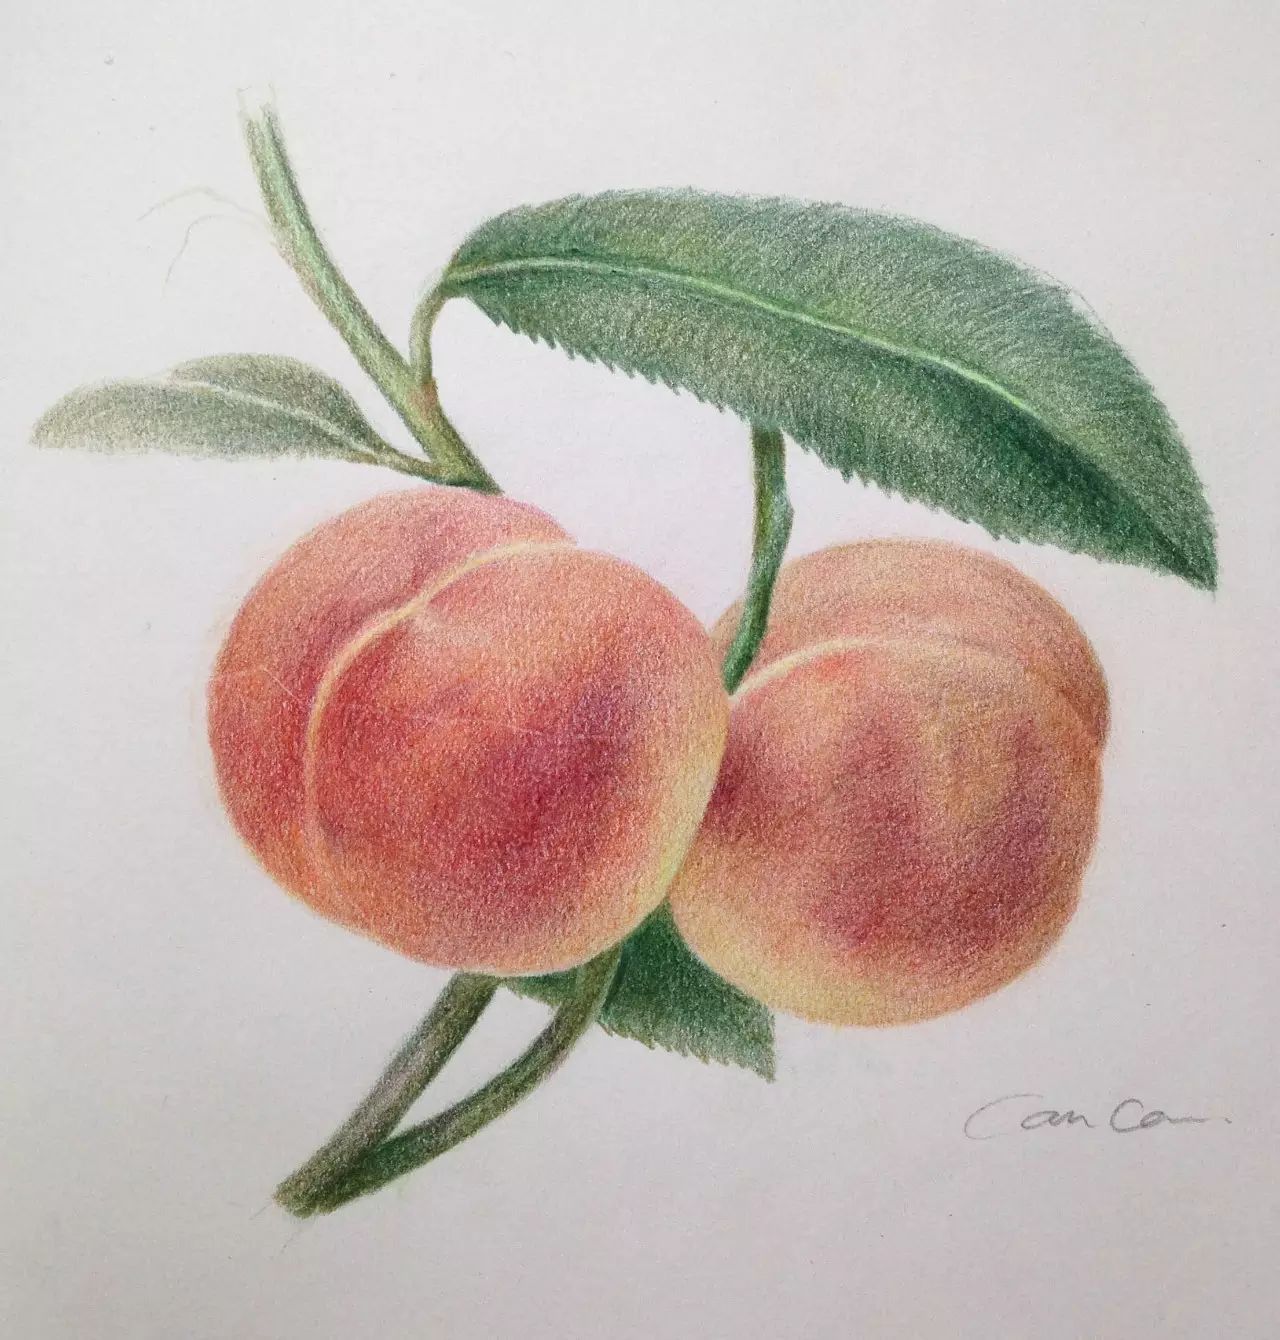 彩铅教程 | 教你用彩铅画熟透了的桃子!